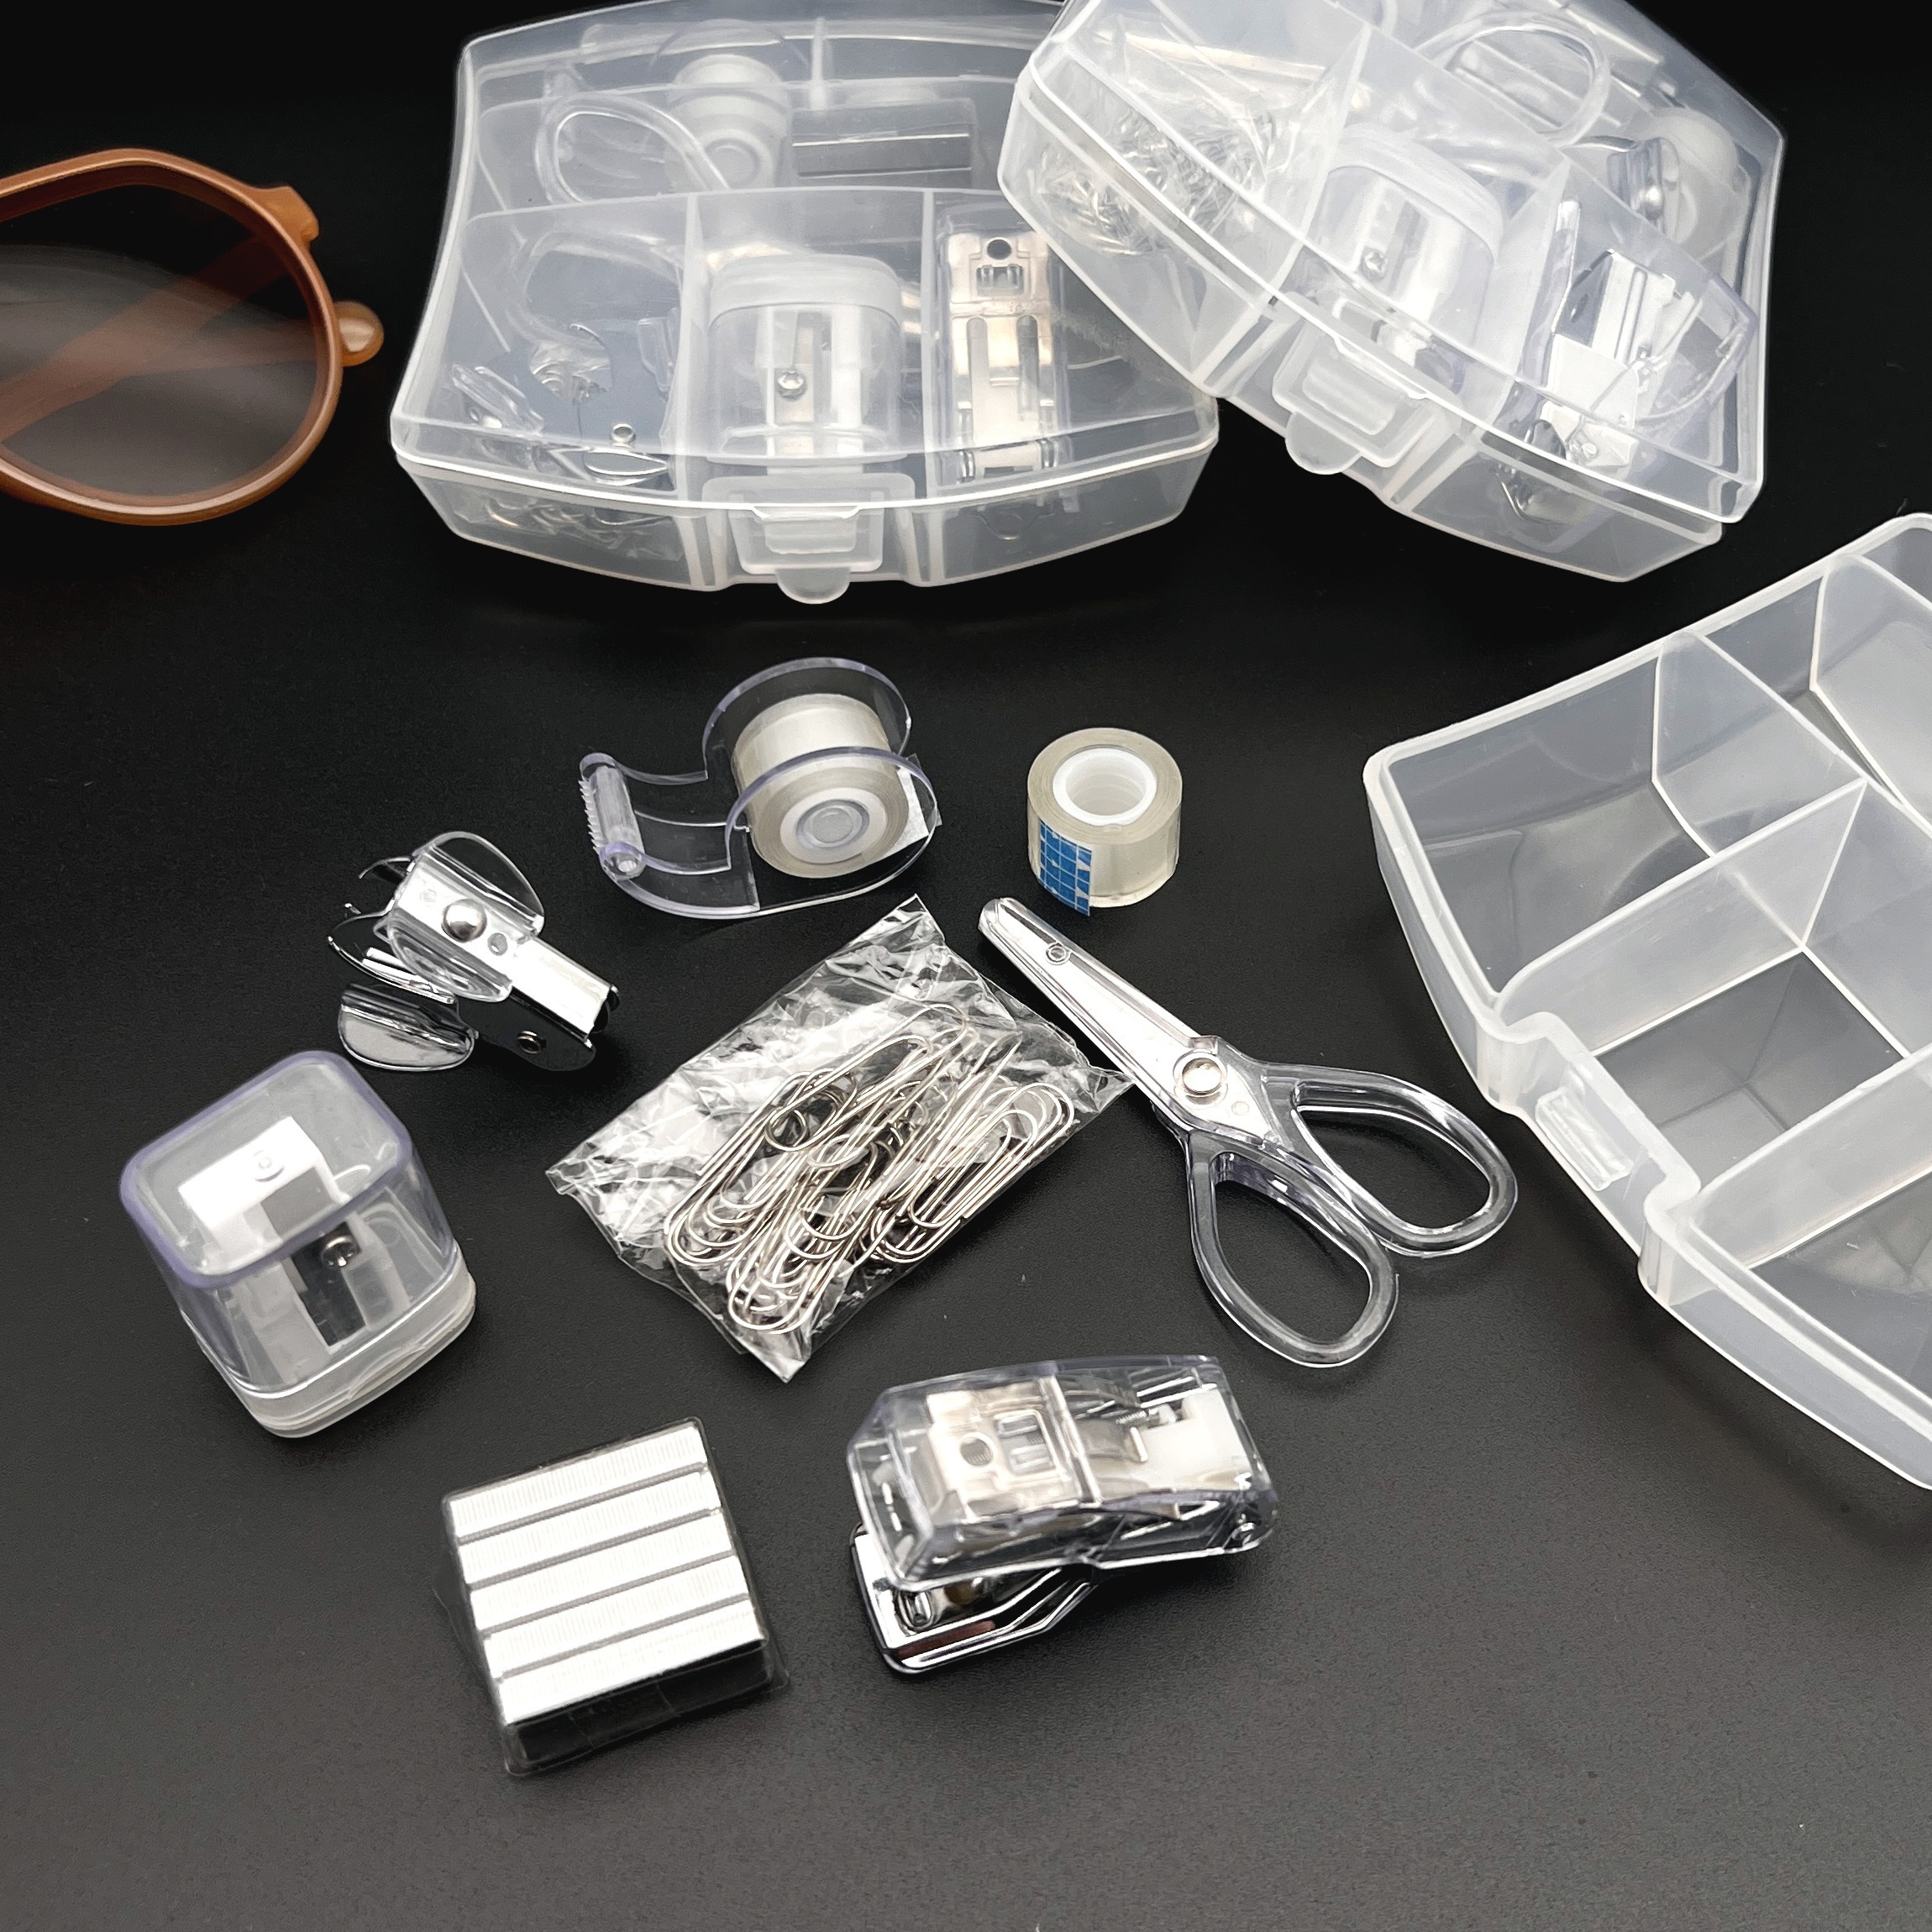 Mini Office Supply Kit in Portable Case w/Scissors/Stapler/Staples